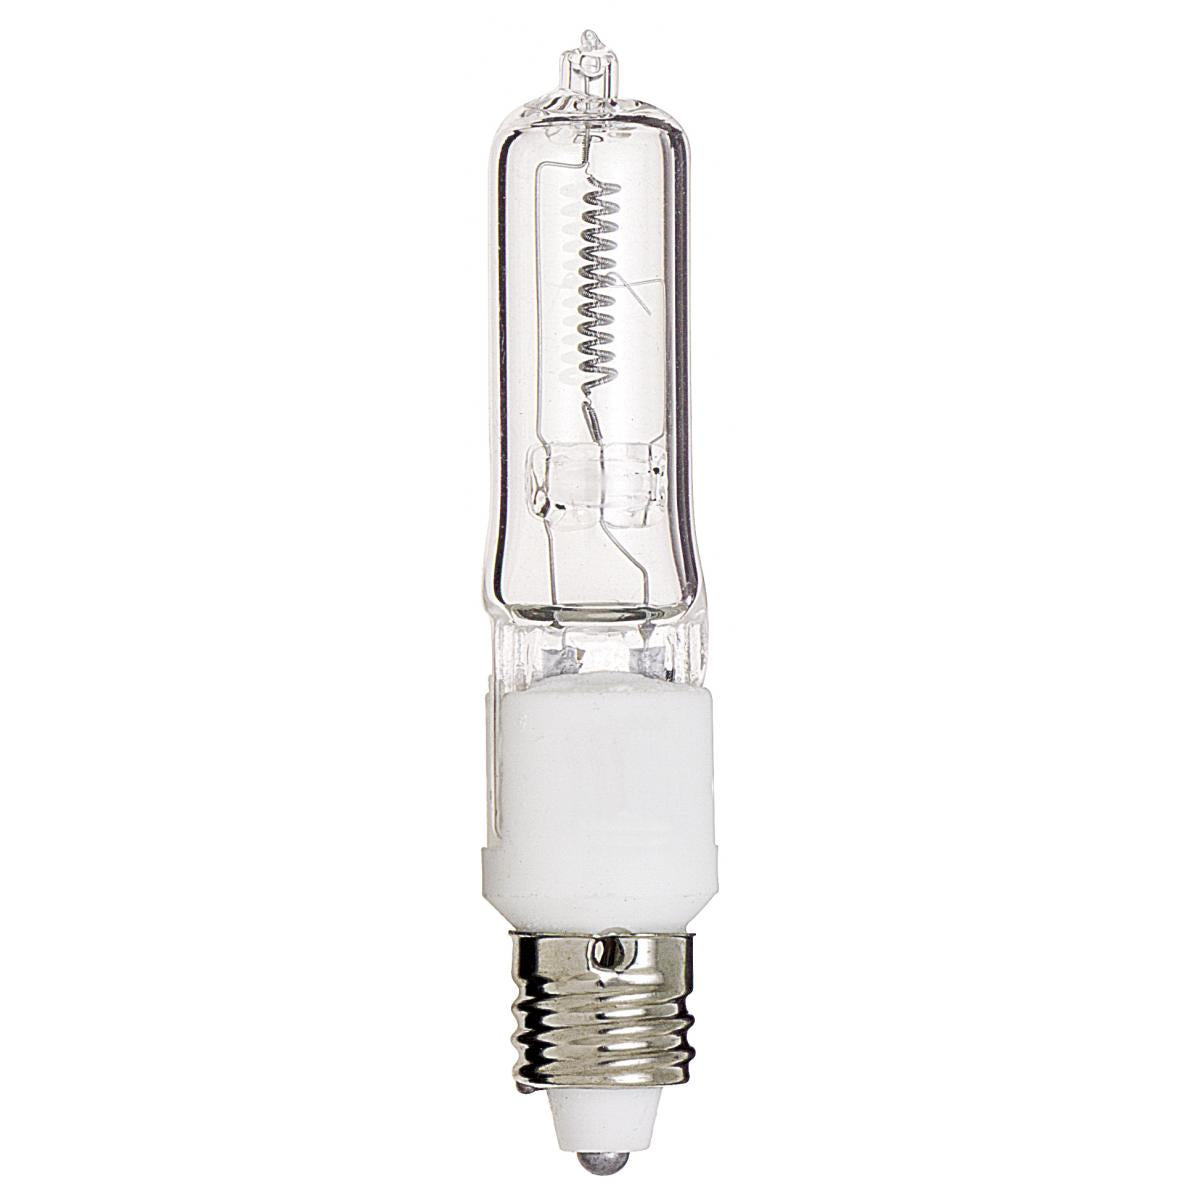 75W Q/CL Mini Can Lightbulb